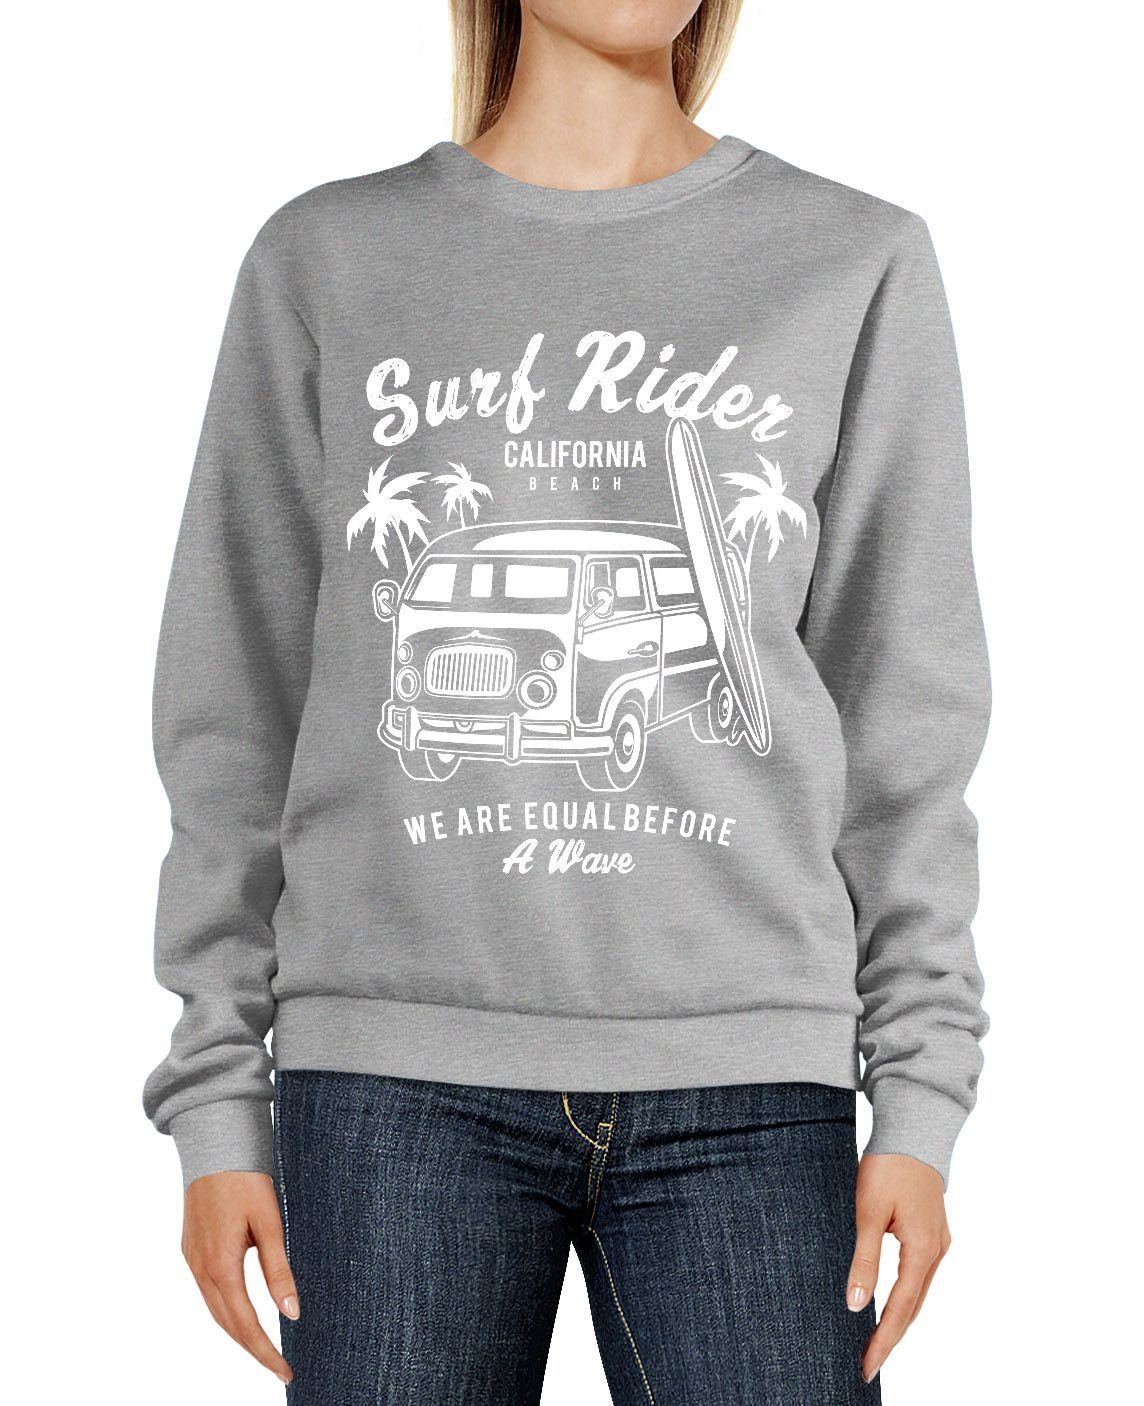 Pulli Rundhals-Pullover grau Retro Sweater Neverless Bus Surfing Aufdruck Sweatshirt California Damen Neverless® Sweatshirt Rider Surf